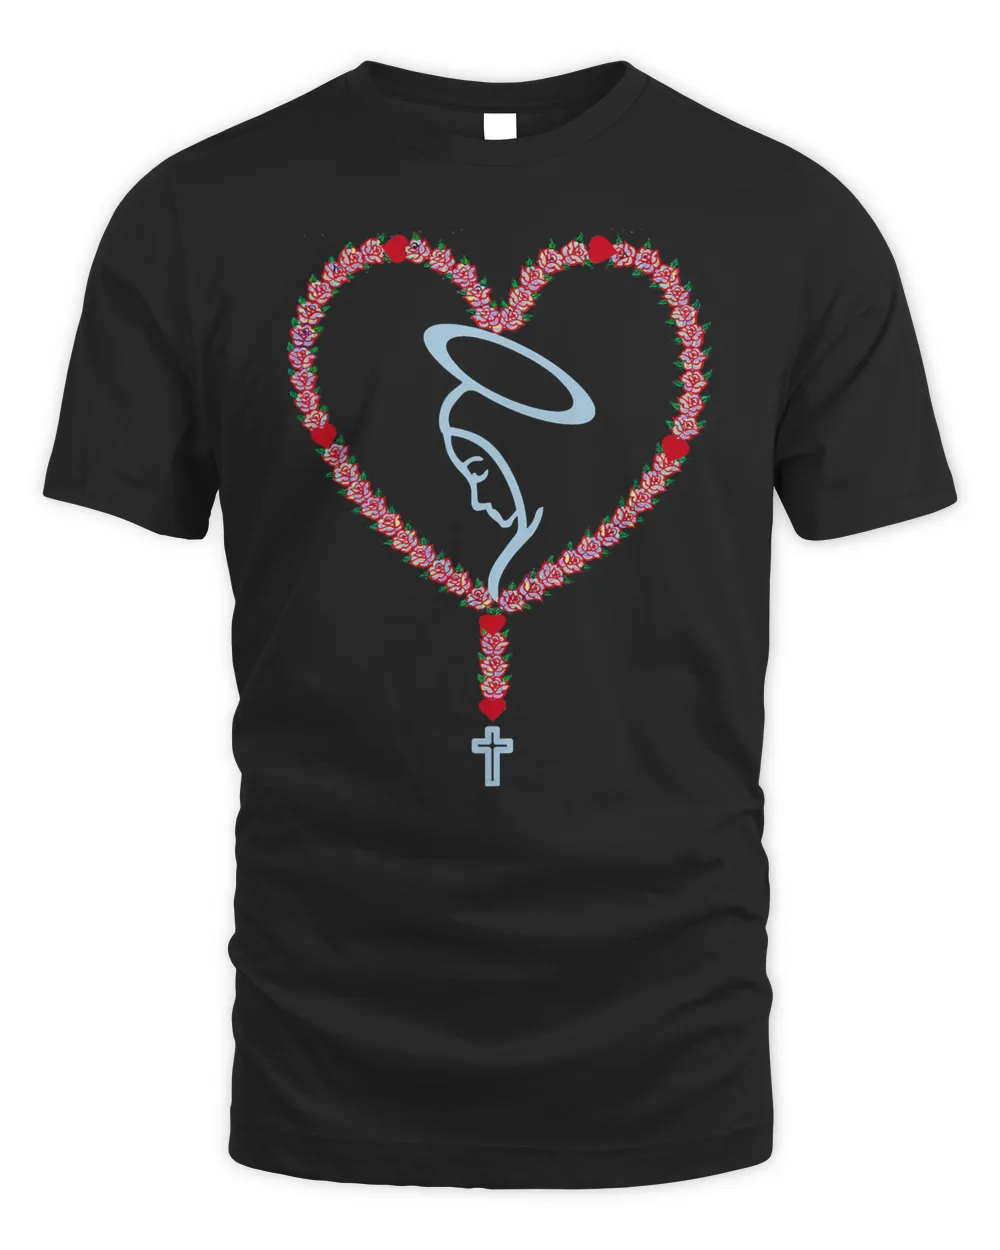 The Holy Rosary Roses Heart T-shirt Virgin Mary Catholics.